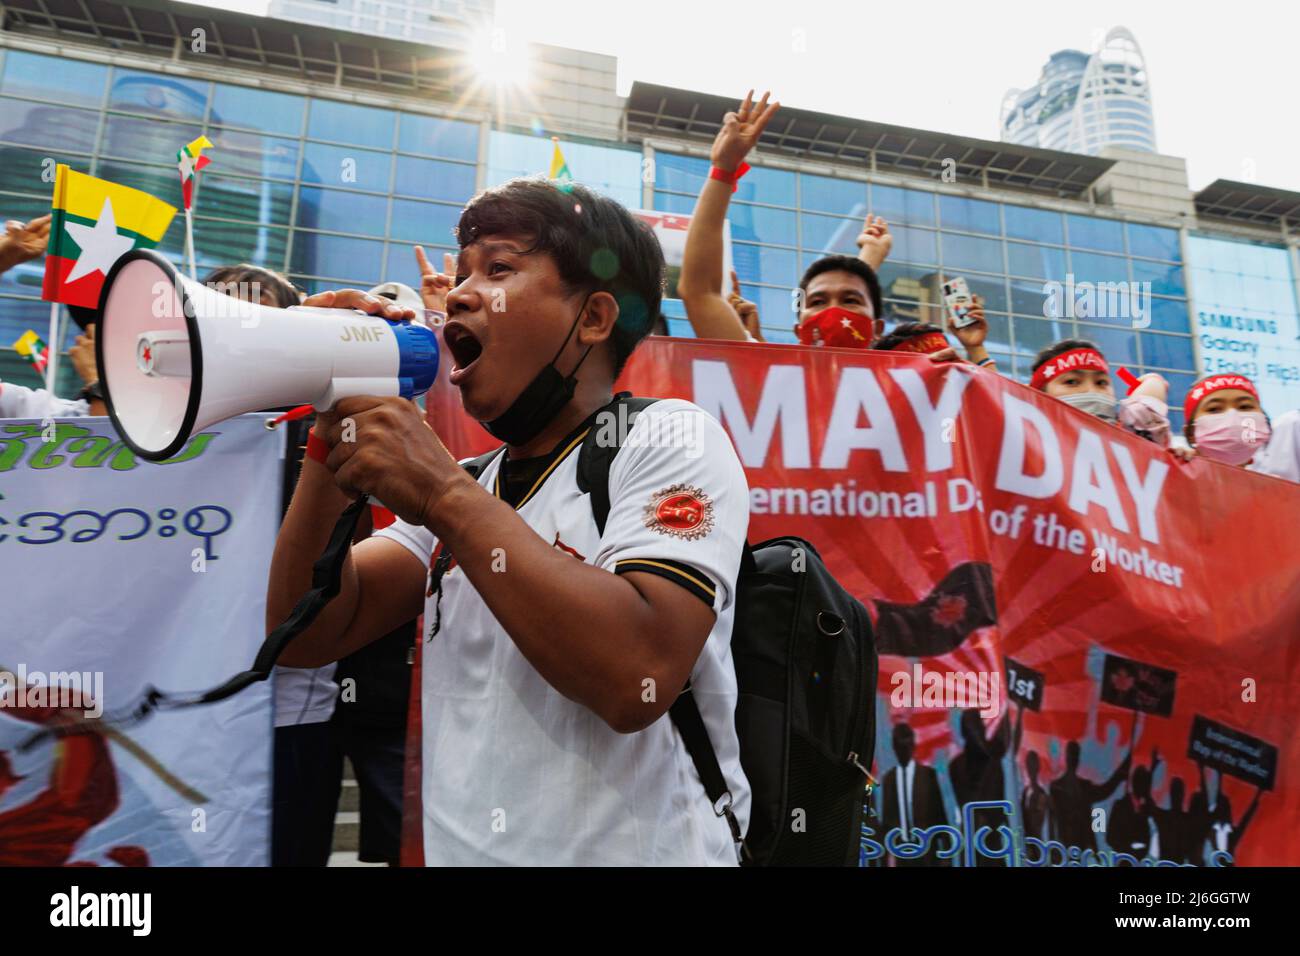 Während der Demonstration sah man einen in Myanmar demonstrierten Redner auf einem Megaphon. Die Arbeitergewerkschaft veranstaltete am Tag der Arbeit in Bangkok, Thailand, eine Parade. An der Parade nahmen verschiedene Gruppen Teil, darunter die thailändische Arbeitergruppe, die myanmarische Arbeitergruppe und die pro-demokratische Gruppe. Sie versammelten sich an der Ratchaprosong Road und marschierten dann zur Kreuzung Pathumwan, Demonstranten forderten Wohlfahrt, faire Zinszahlungen und auch Demokratie (einschließlich Thailand und Myanmar). (Foto von Varuth Pongsapipatt / SOPA Images/Sipa USA) Stockfoto